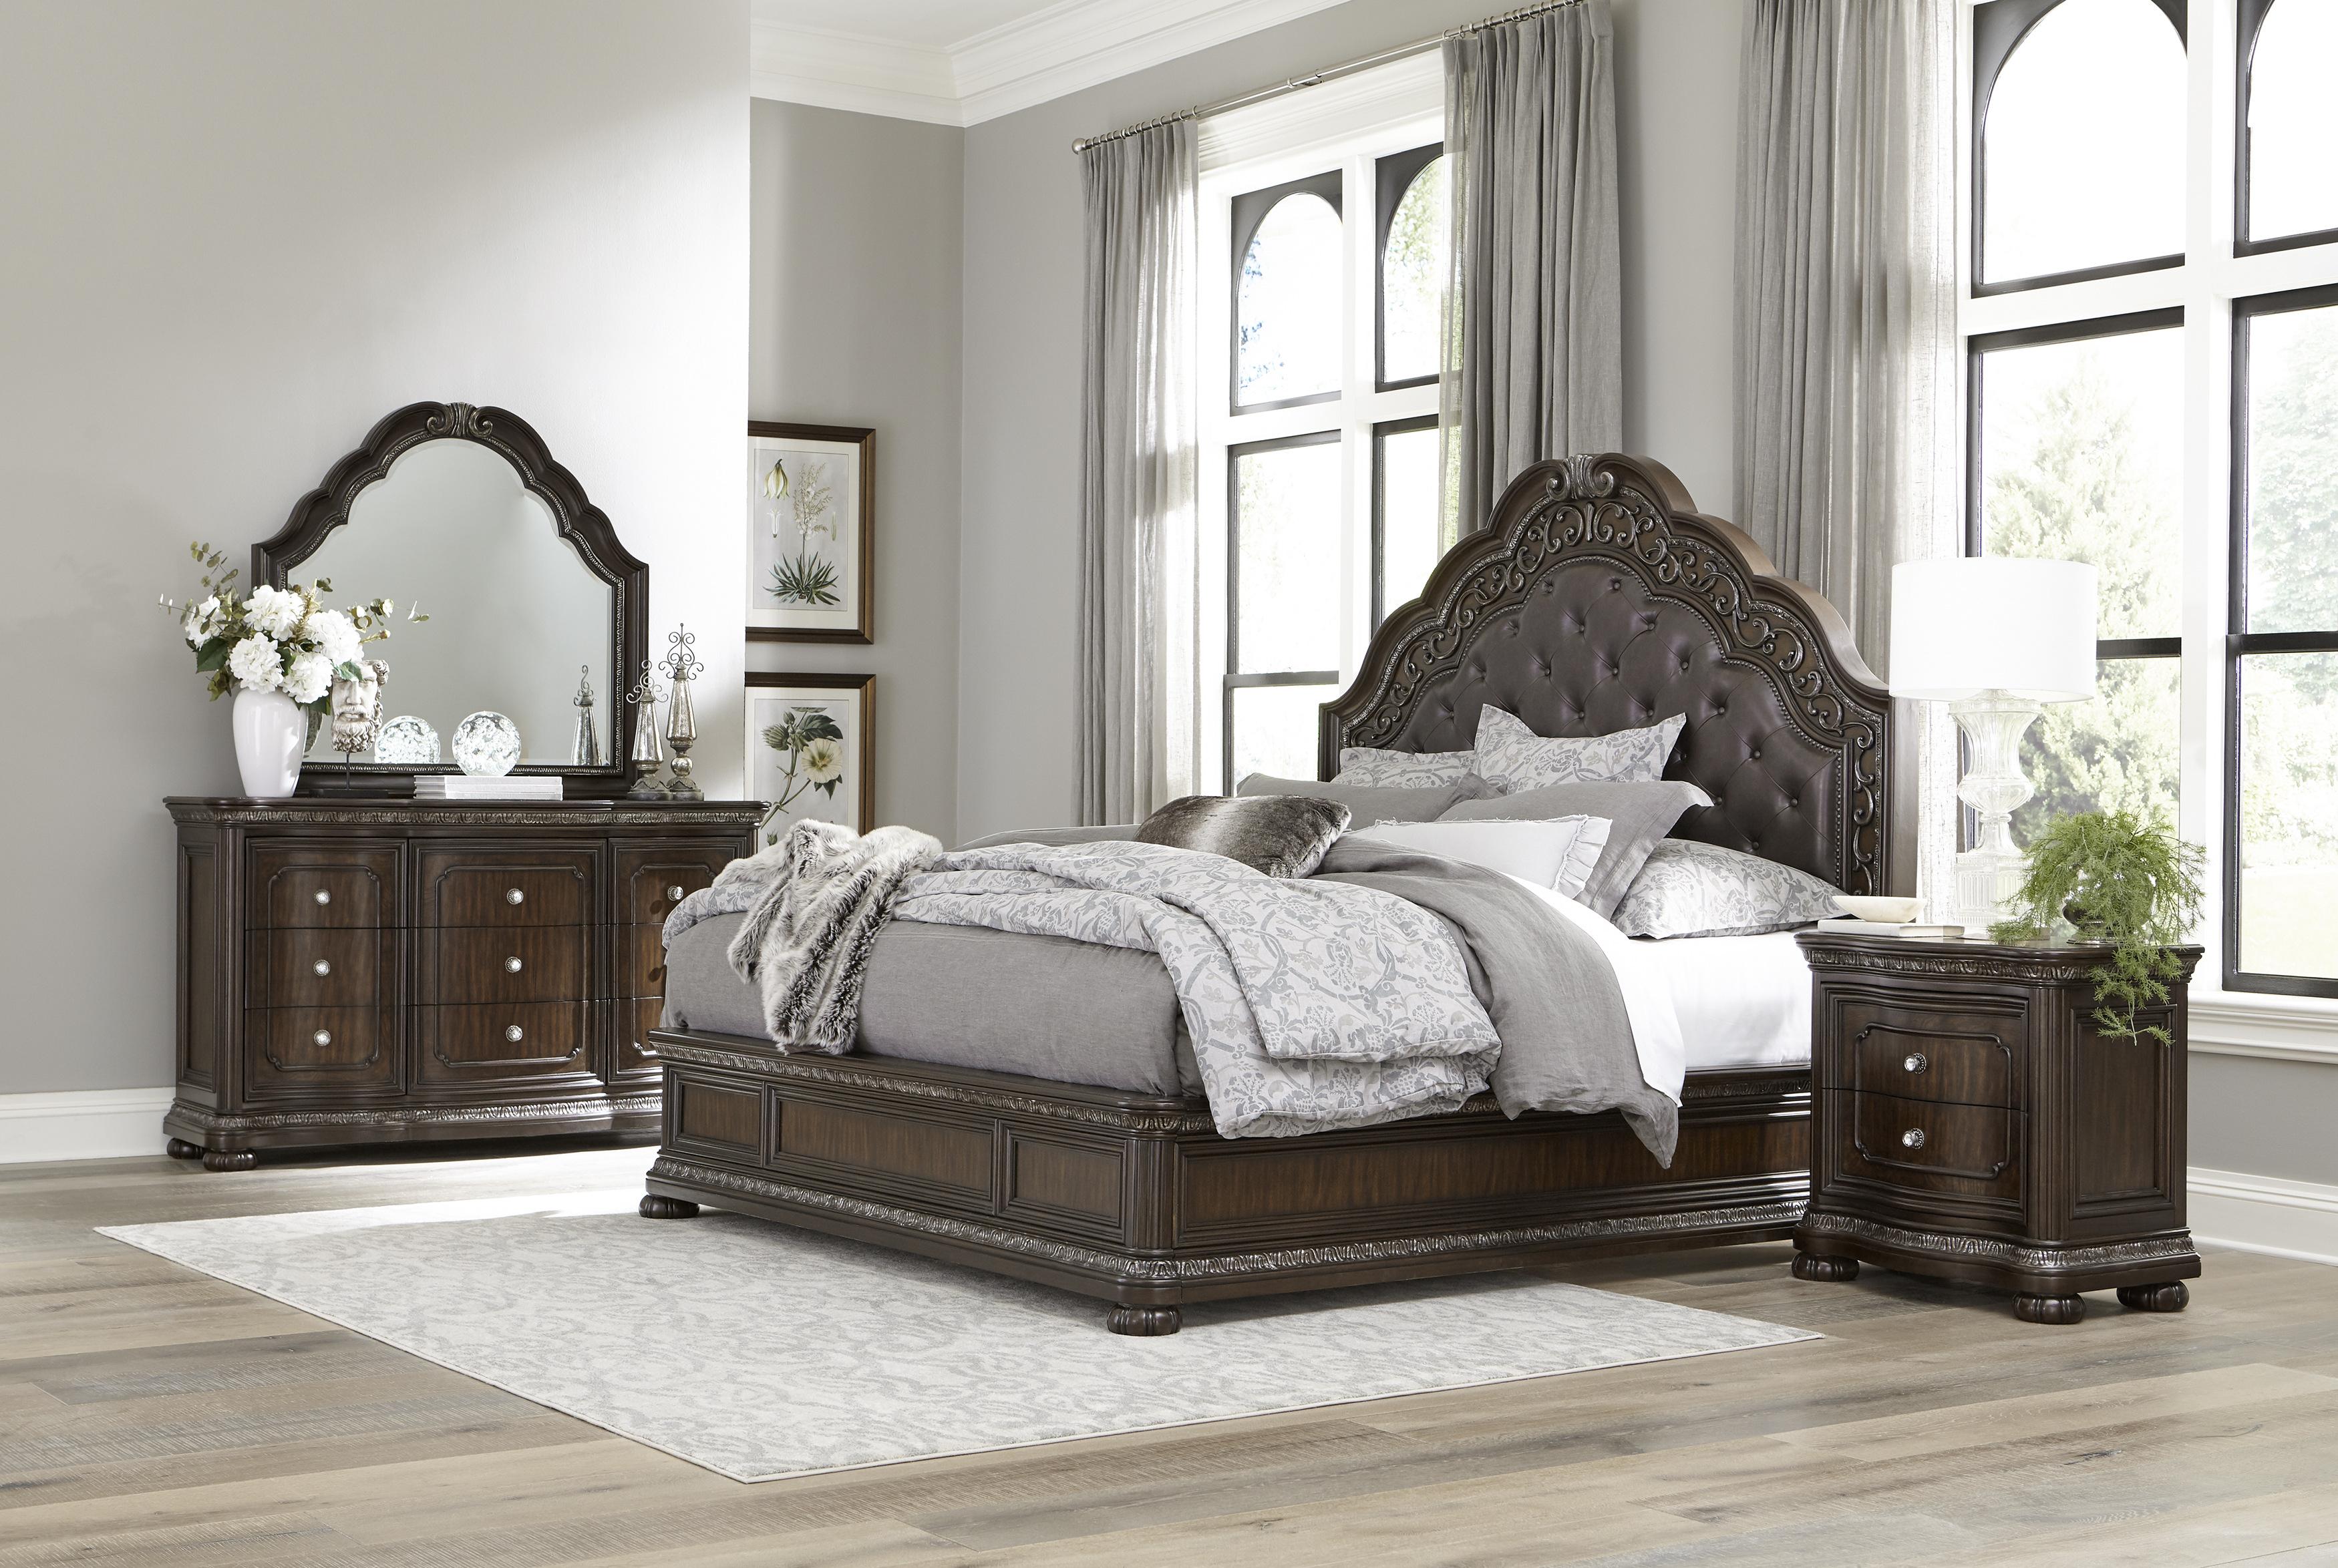 

    
Traditional Dark Cherry Wood Queen Bedroom Set 6pcs Homelegance 1407-1* Beddington
